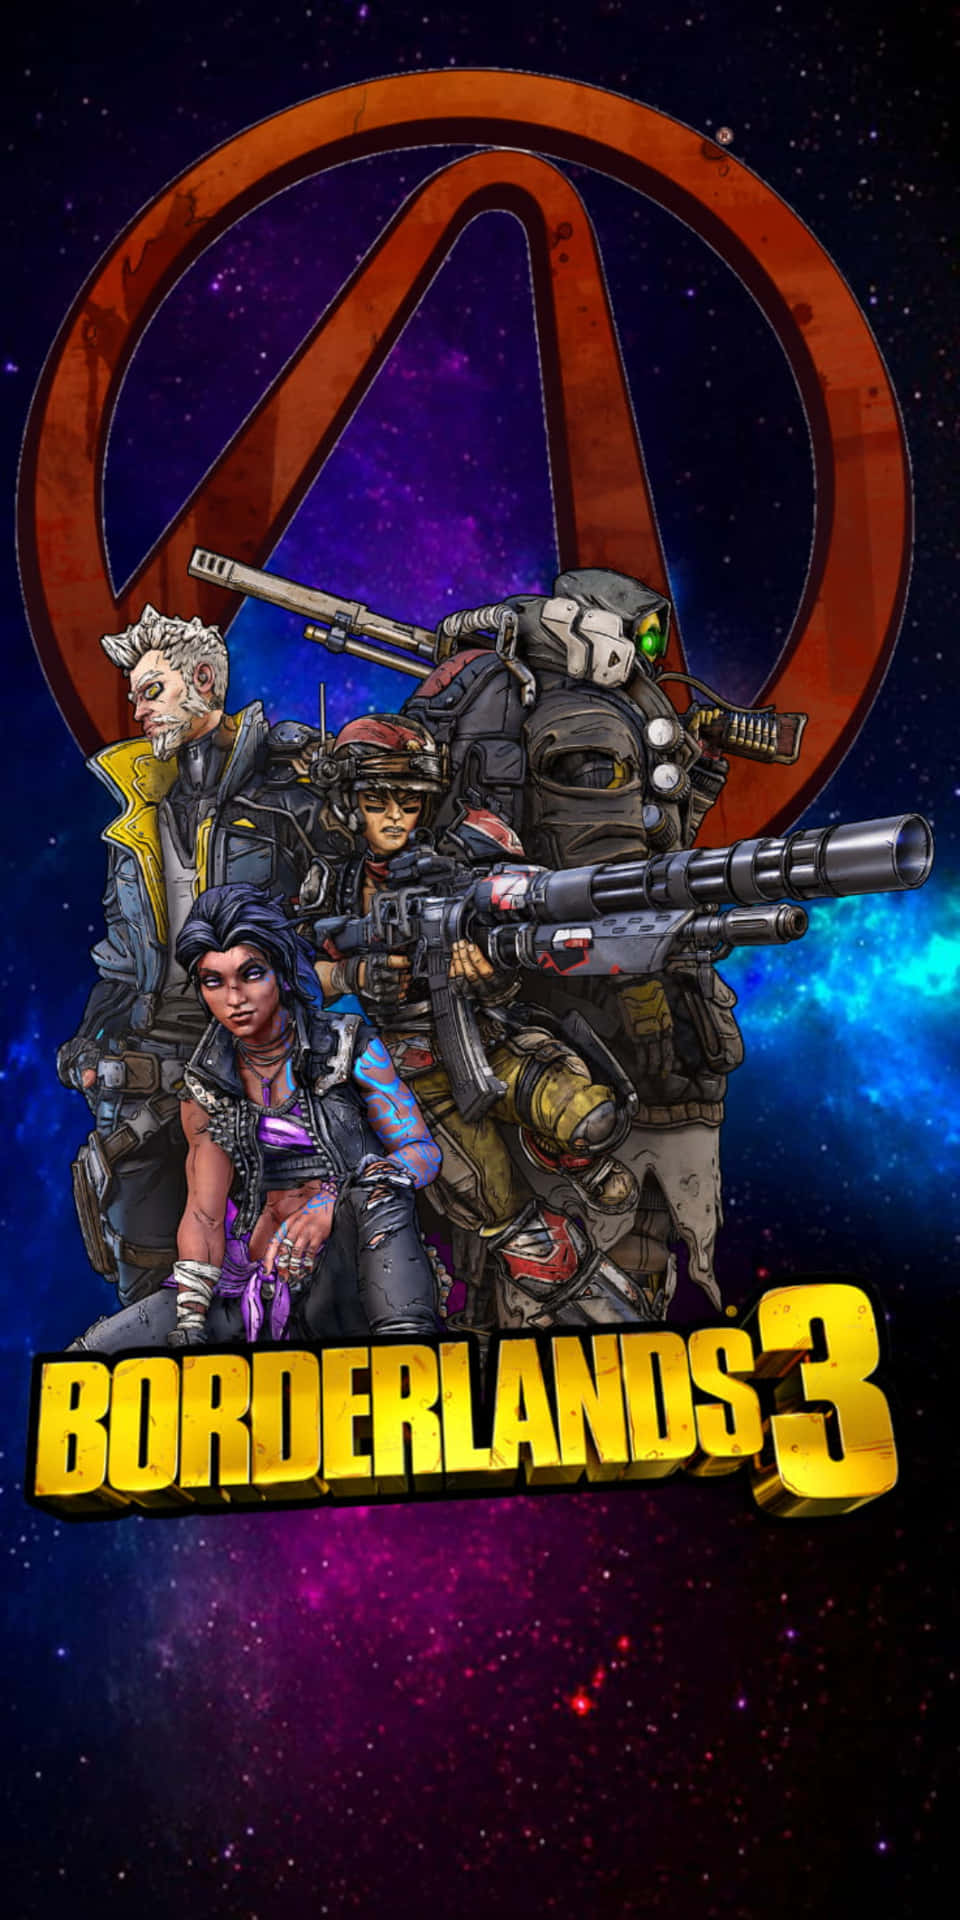 Personajesde Videojuegos Pixel 3 Fondo Borderlands 3